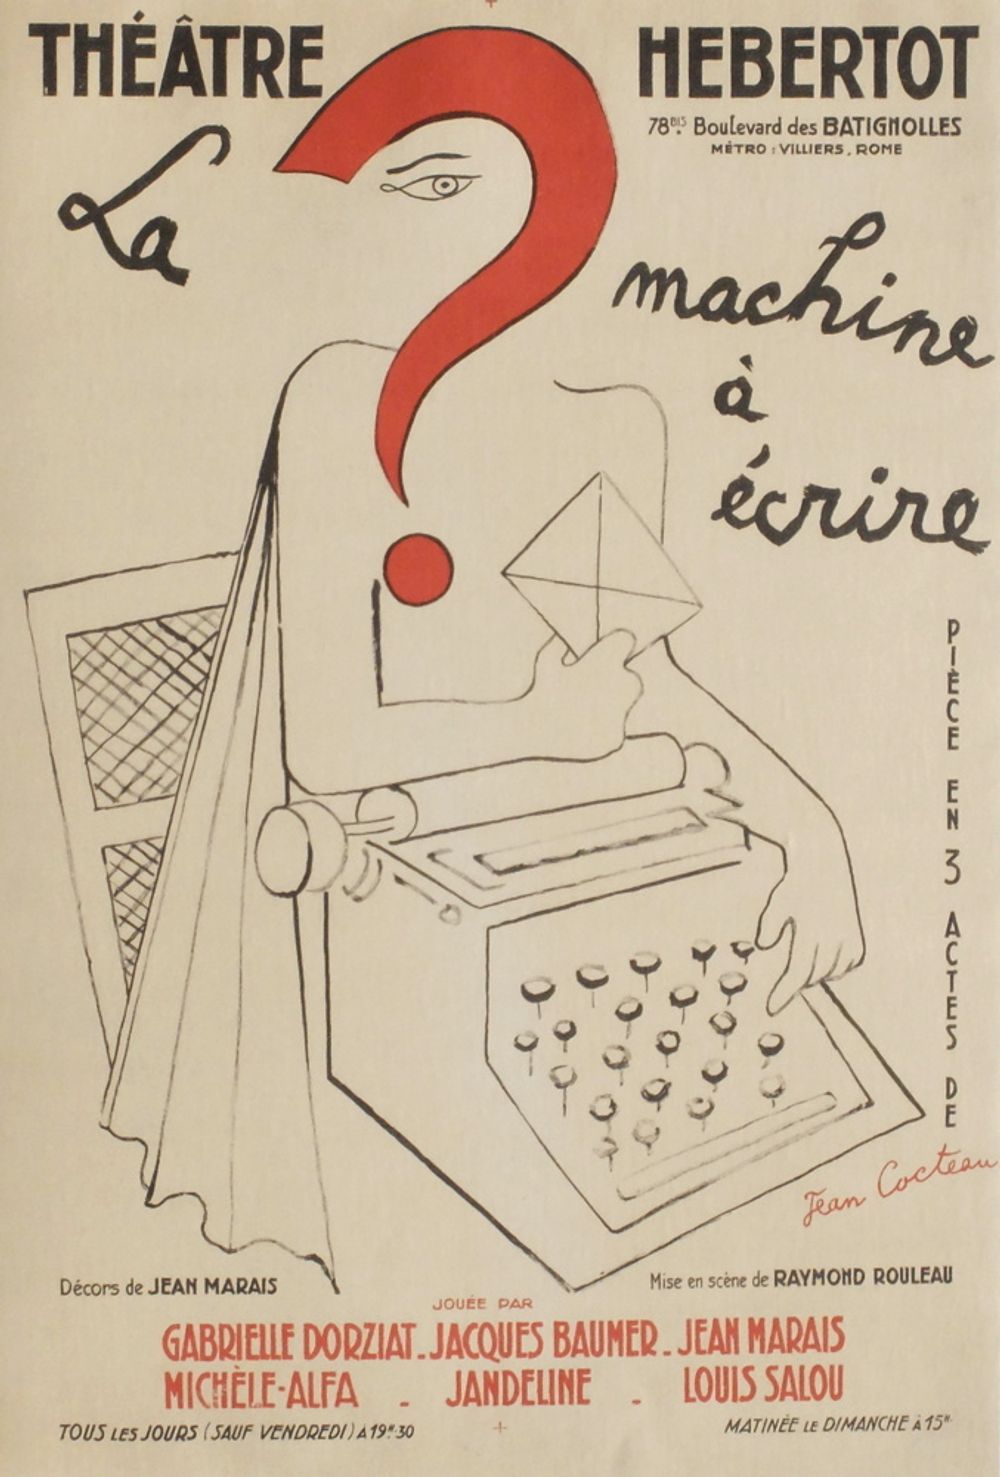 La machine à écrire